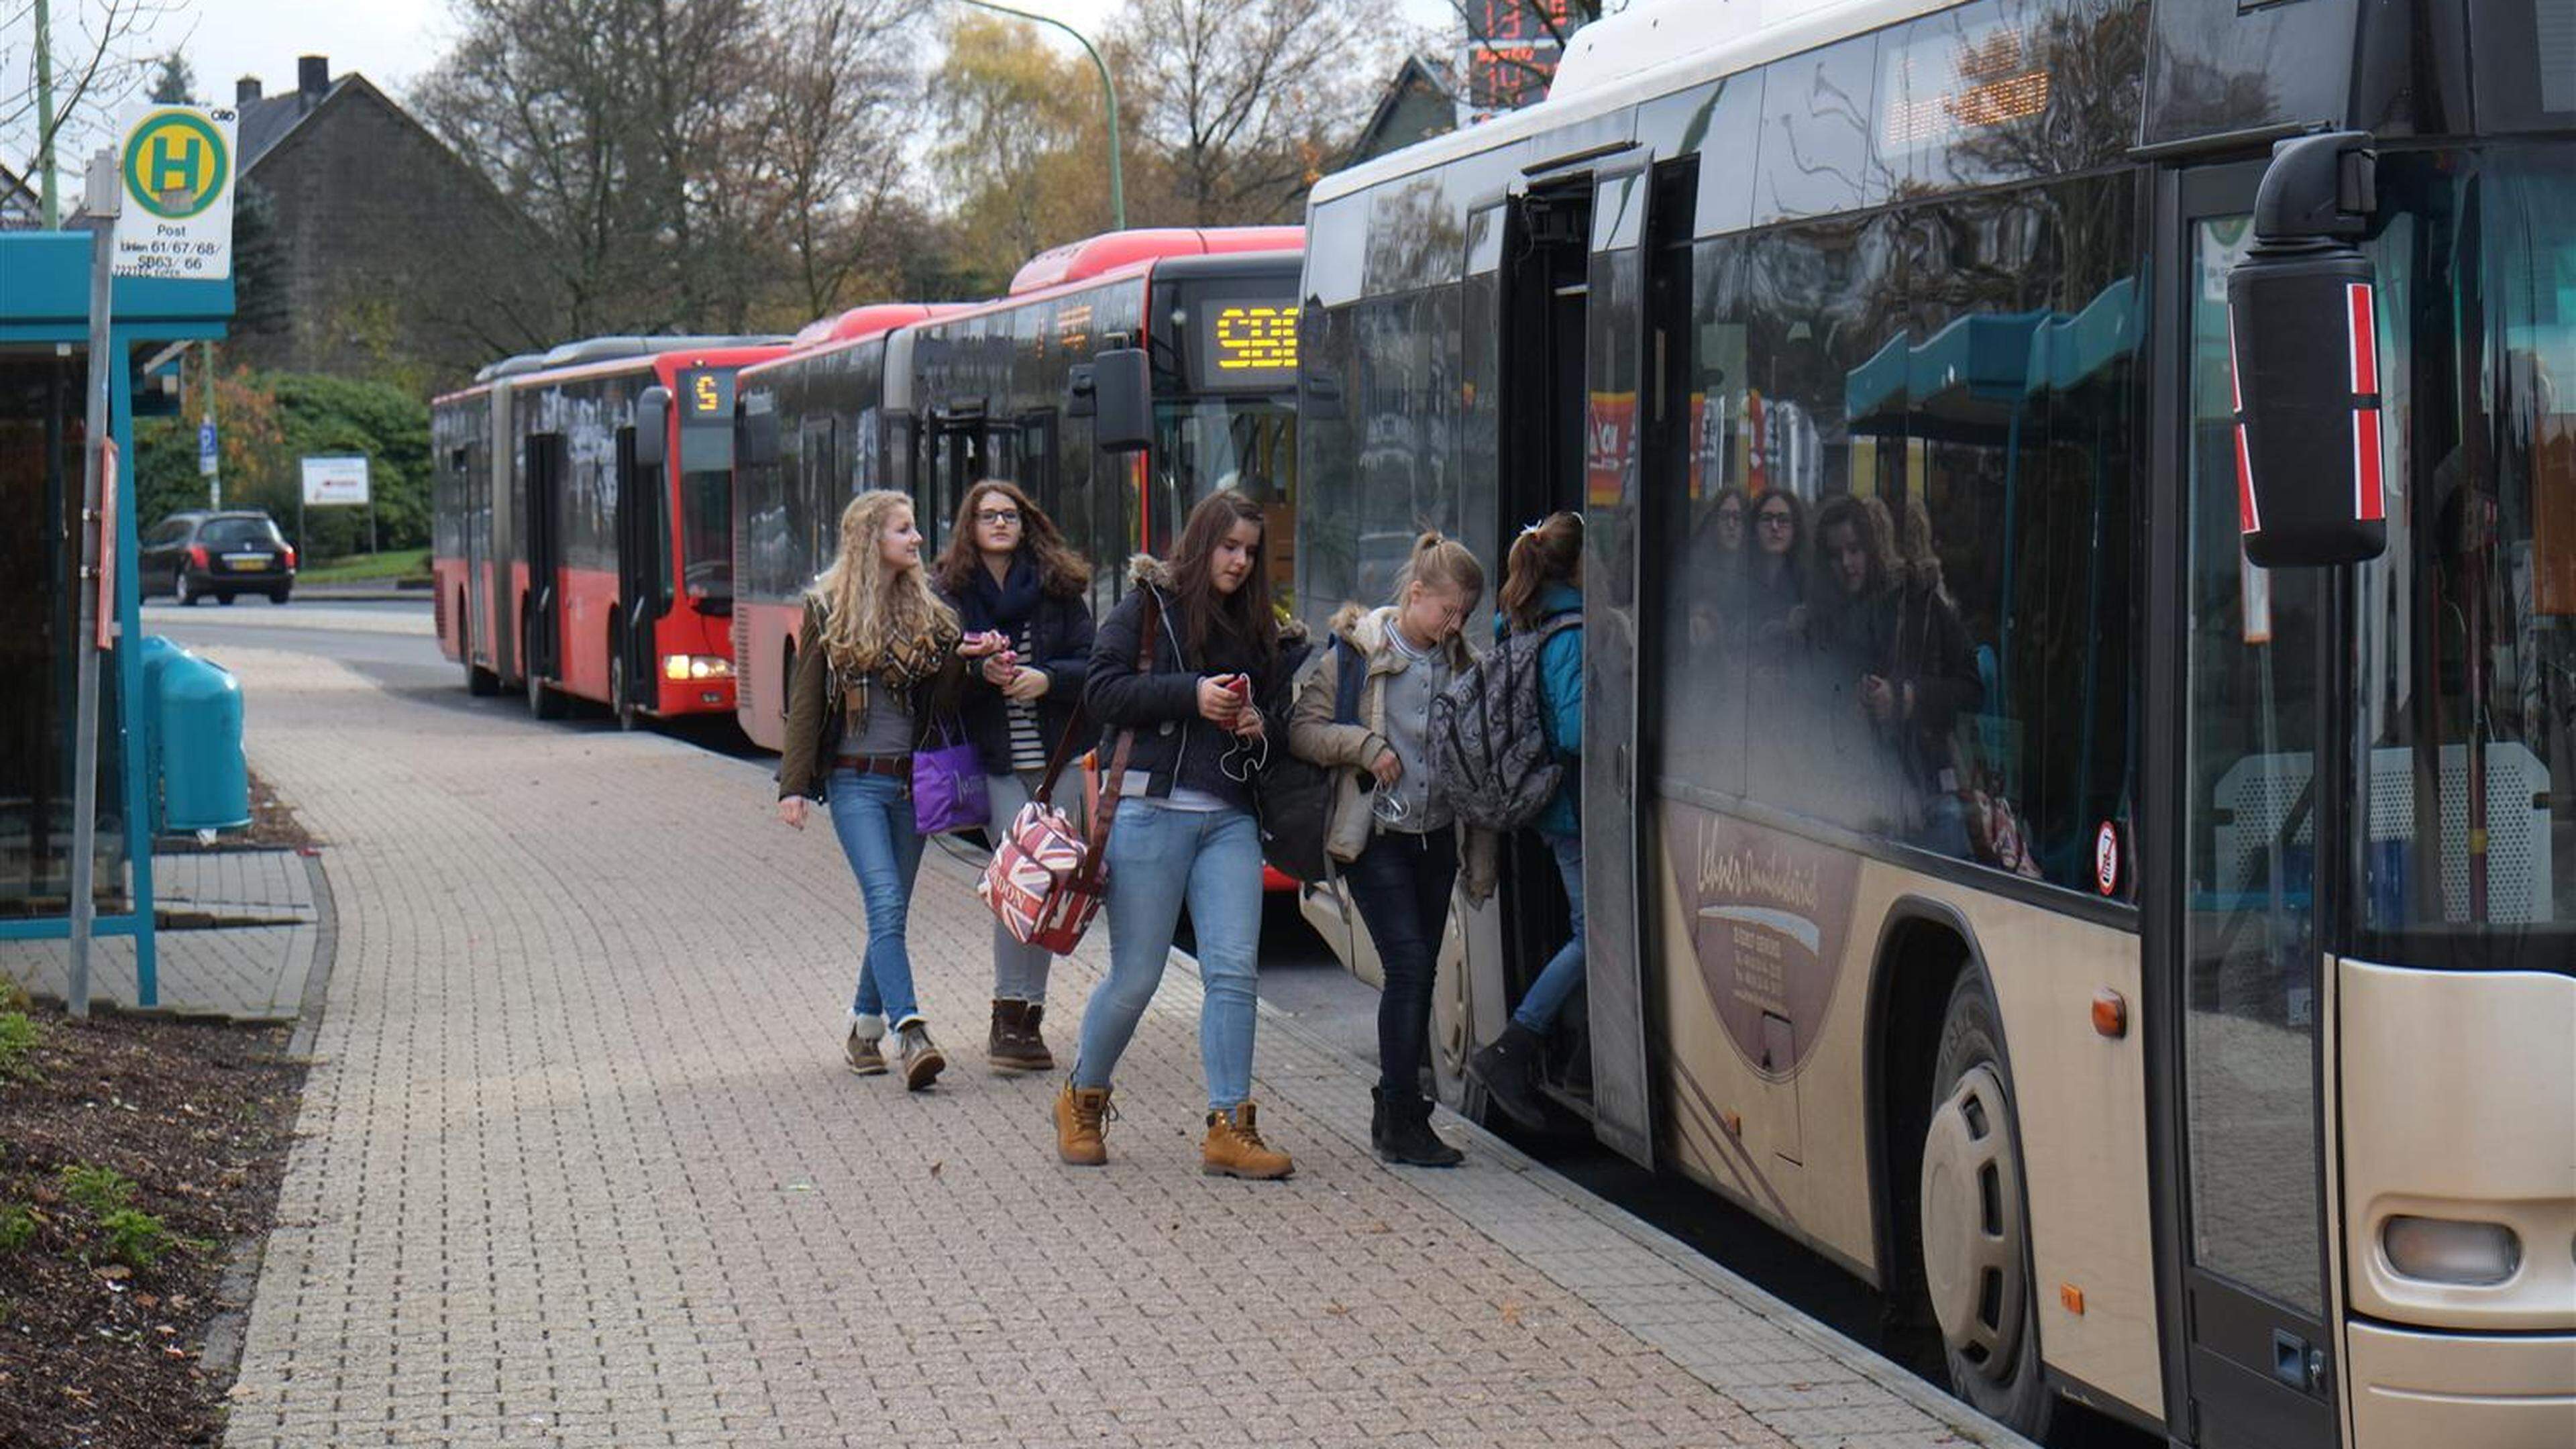 Unbedingt verbesserungsbedürftig: Die Organisation des öffentlichen Personennahverkehrs in Roetgen.